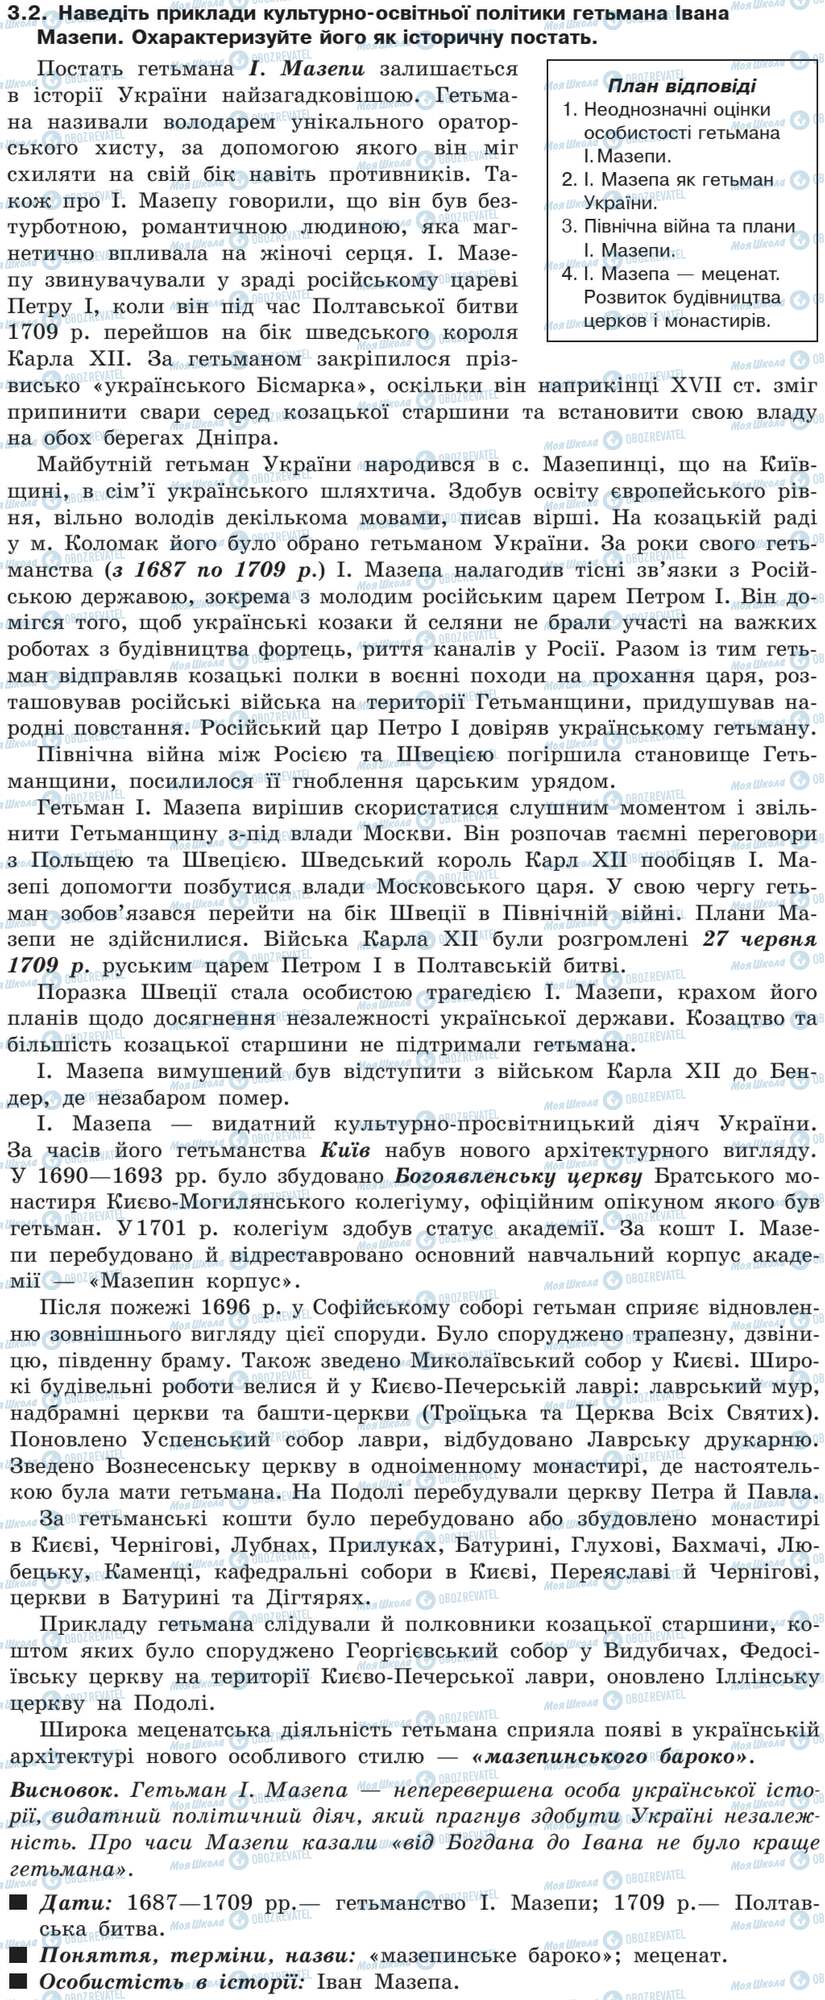 ДПА История Украины 9 класс страница 3.2